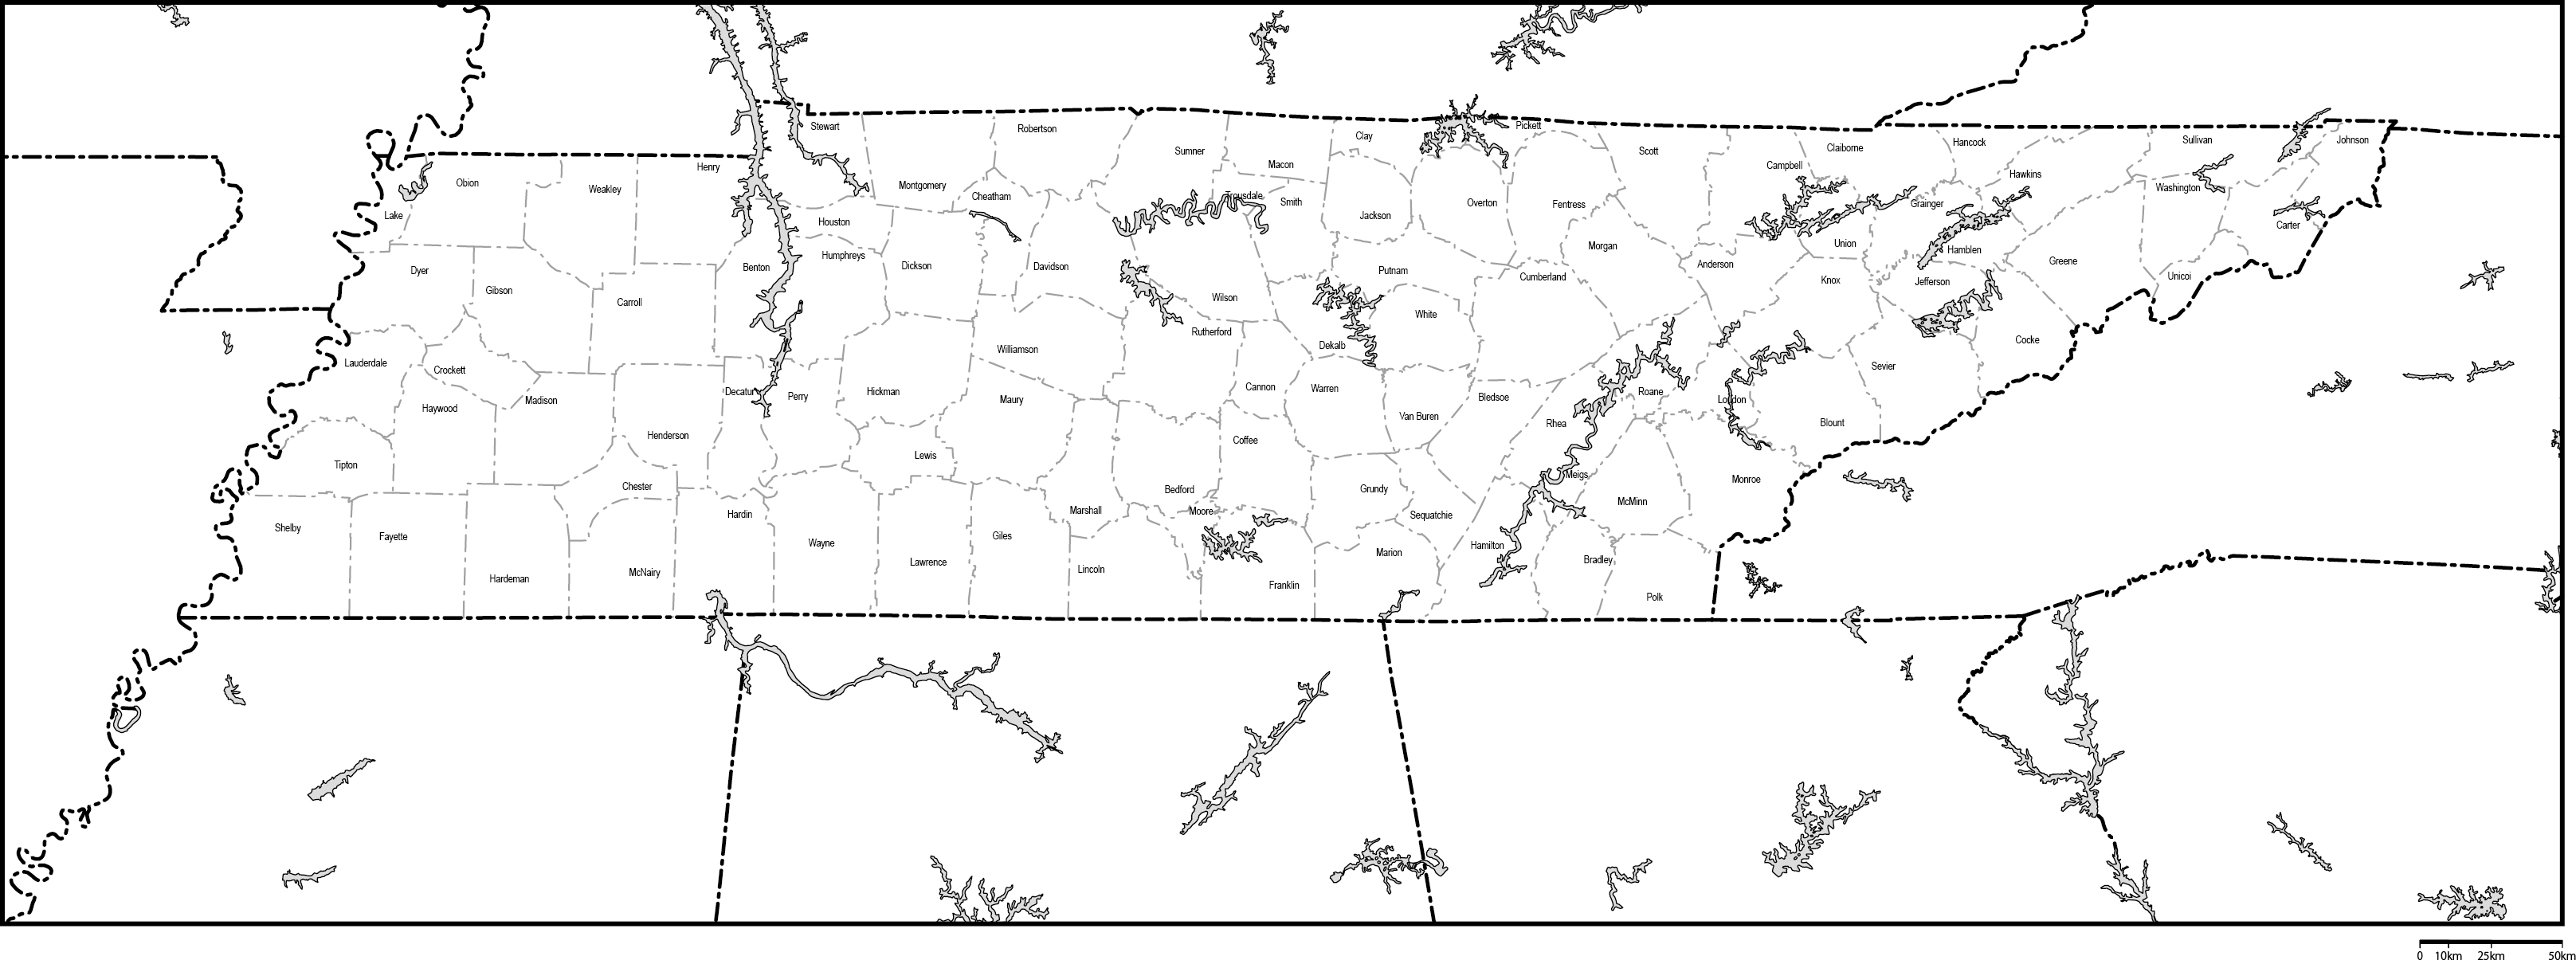 テネシー州郡分け白地図郡名あり(英語)フリーデータの画像